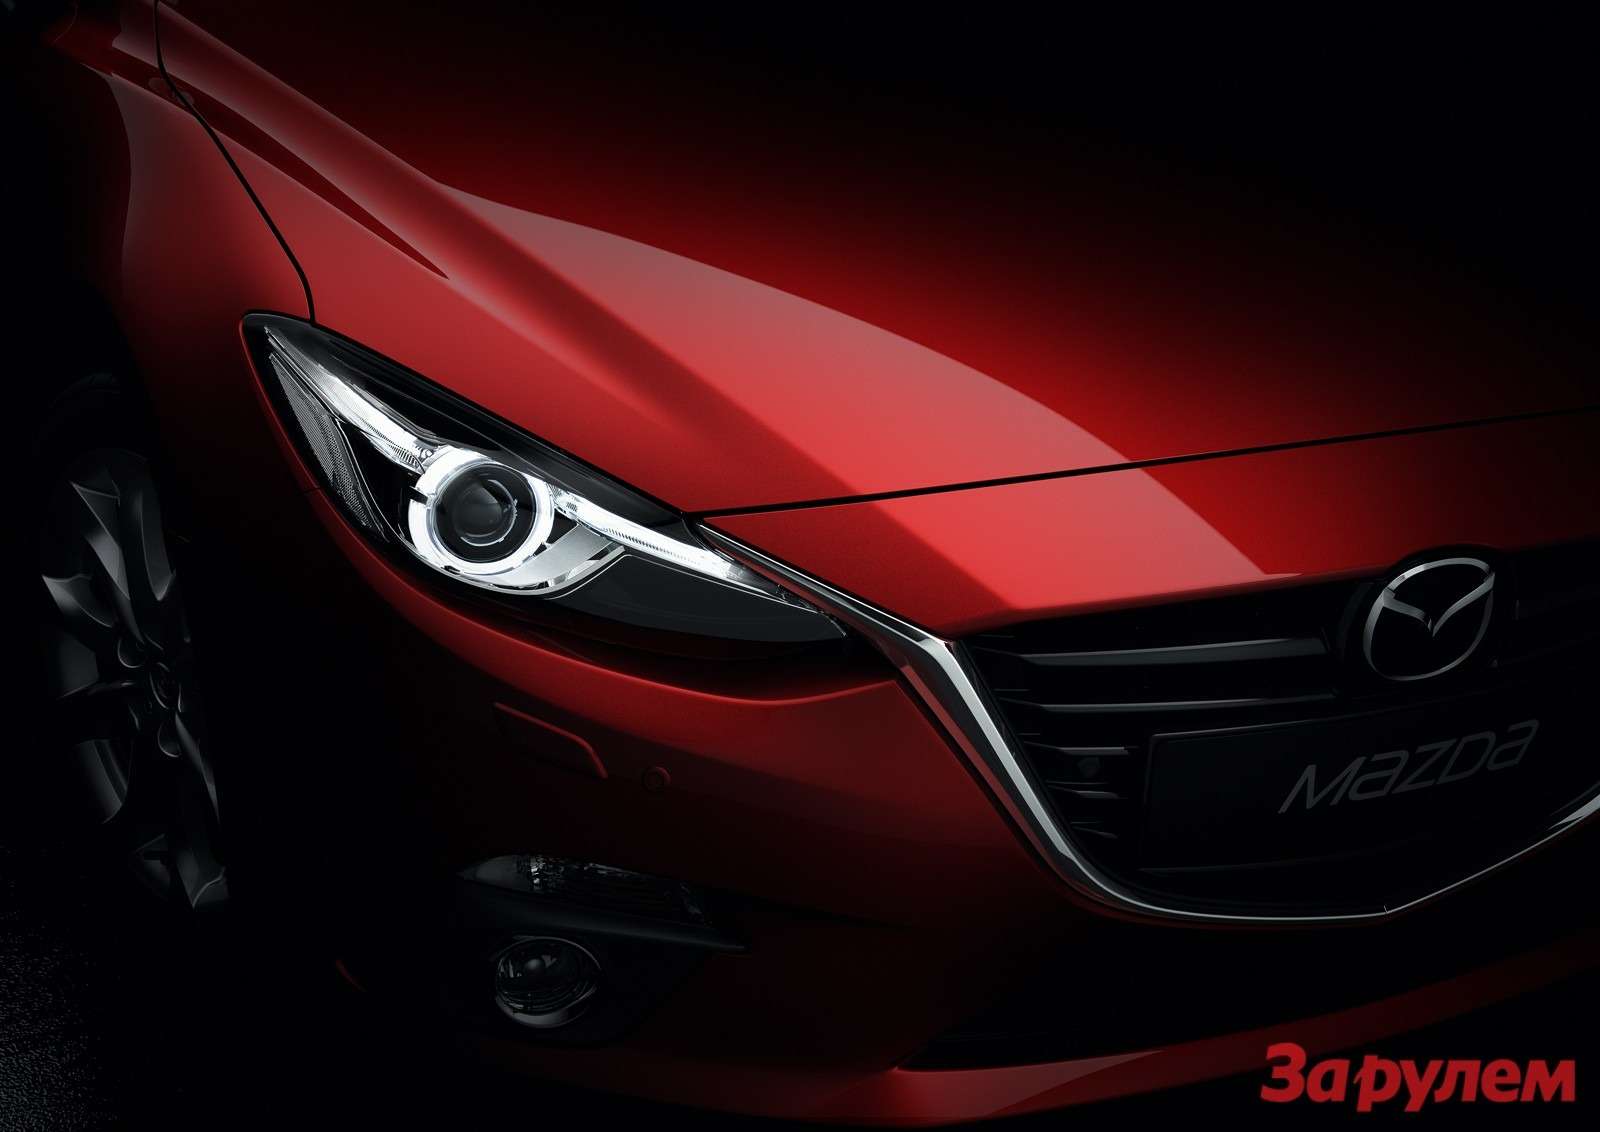 Mazda3 Hatchback 2013 detail 02 copy